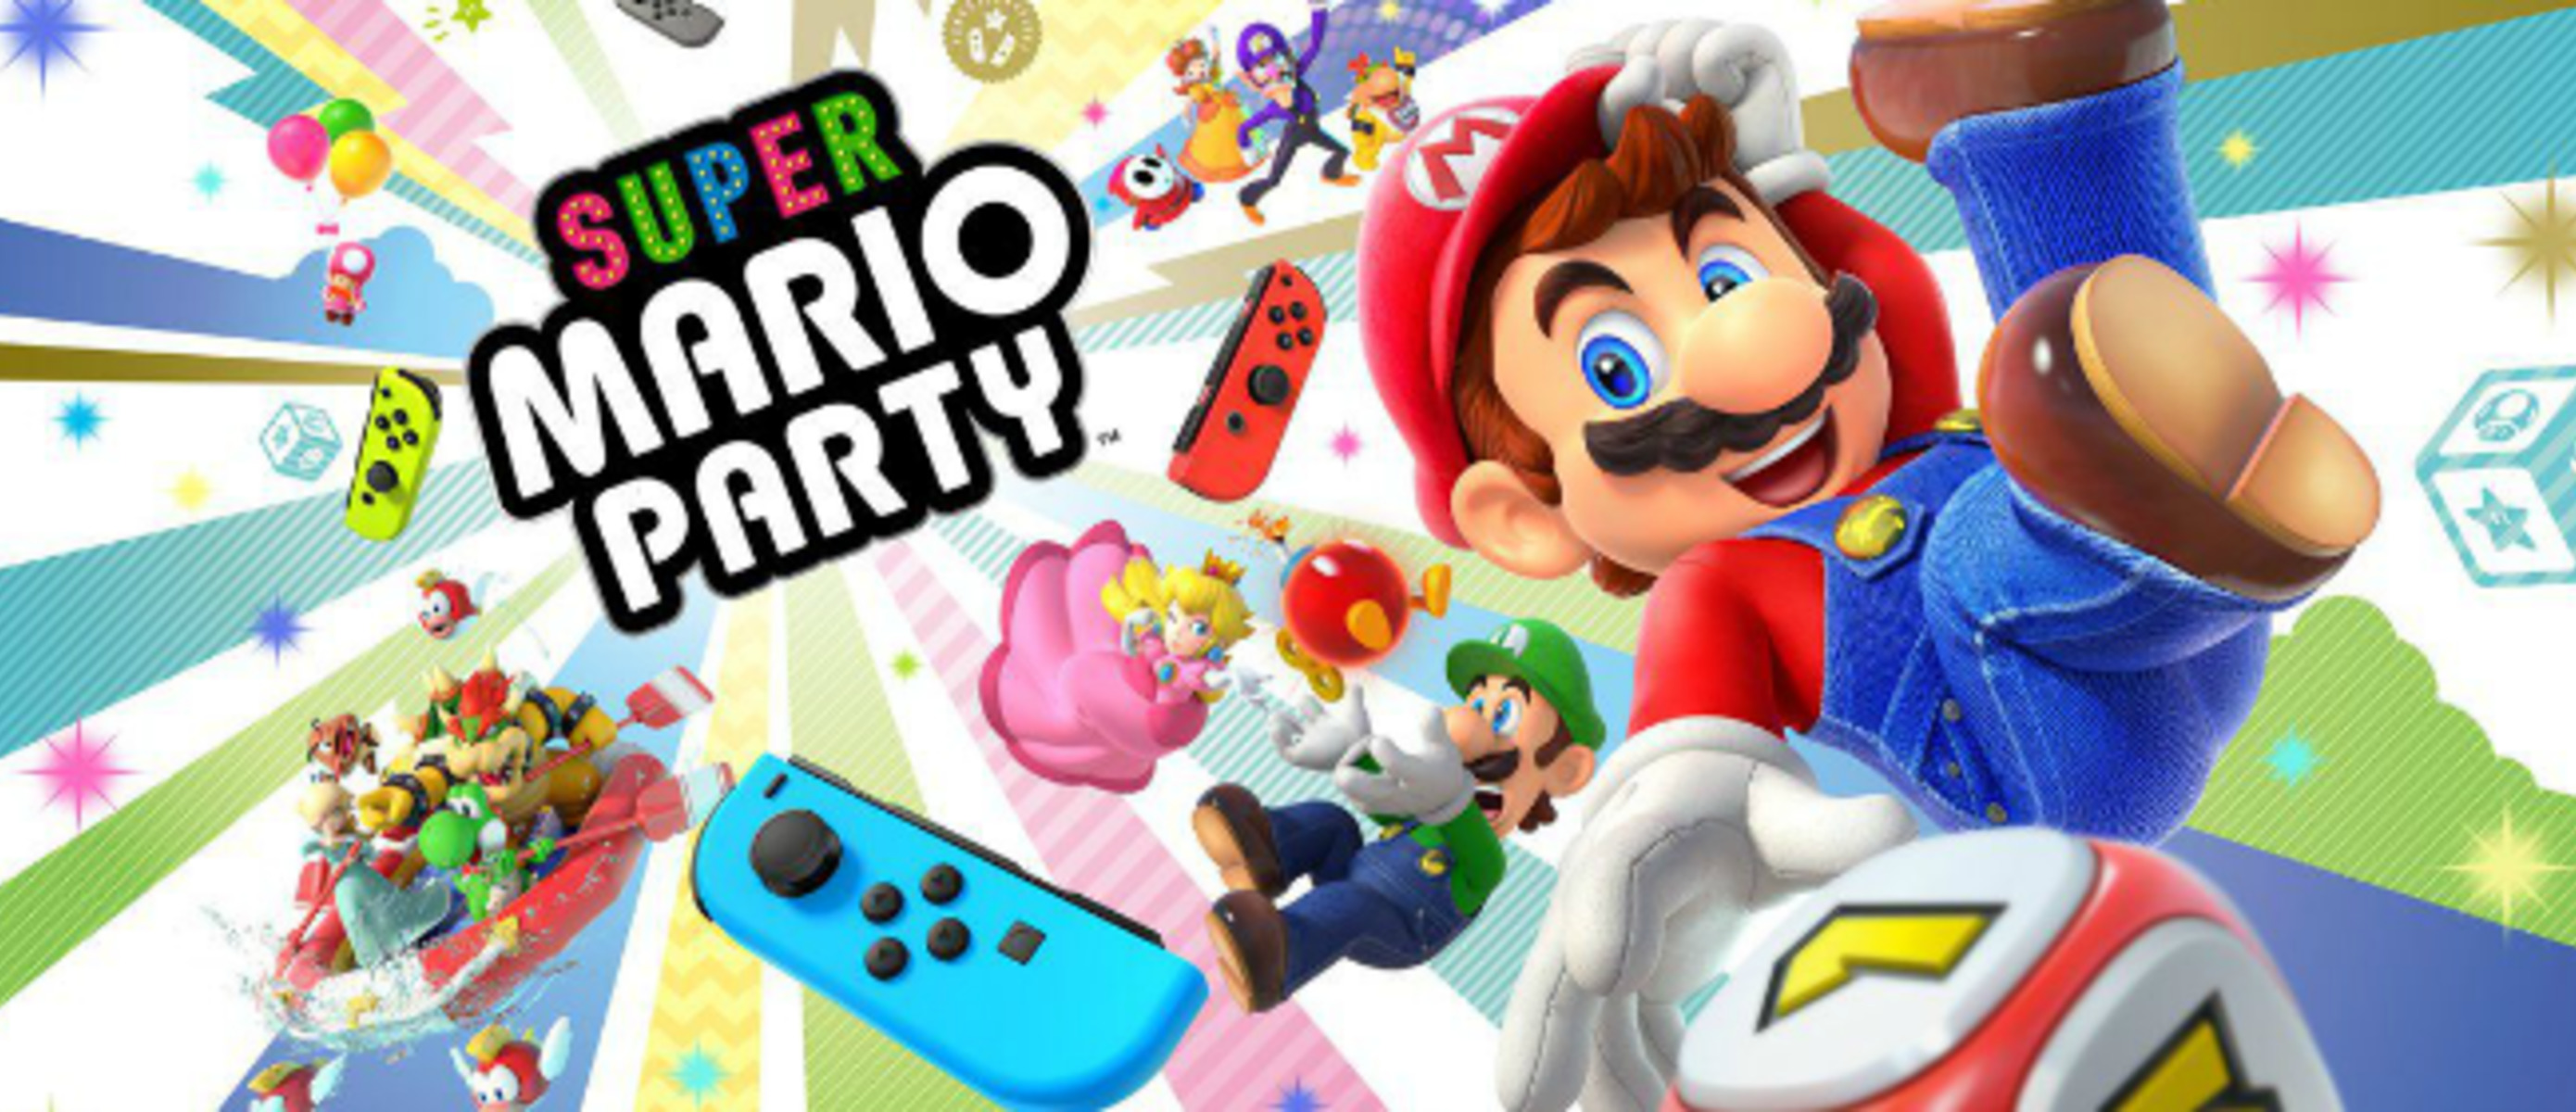 Super switch игра. Марио пати Нинтендо свитч. Супер Марио патининткендо свитч. Mario Party Superstars Nintendo Switch. Super Mario Party игра.